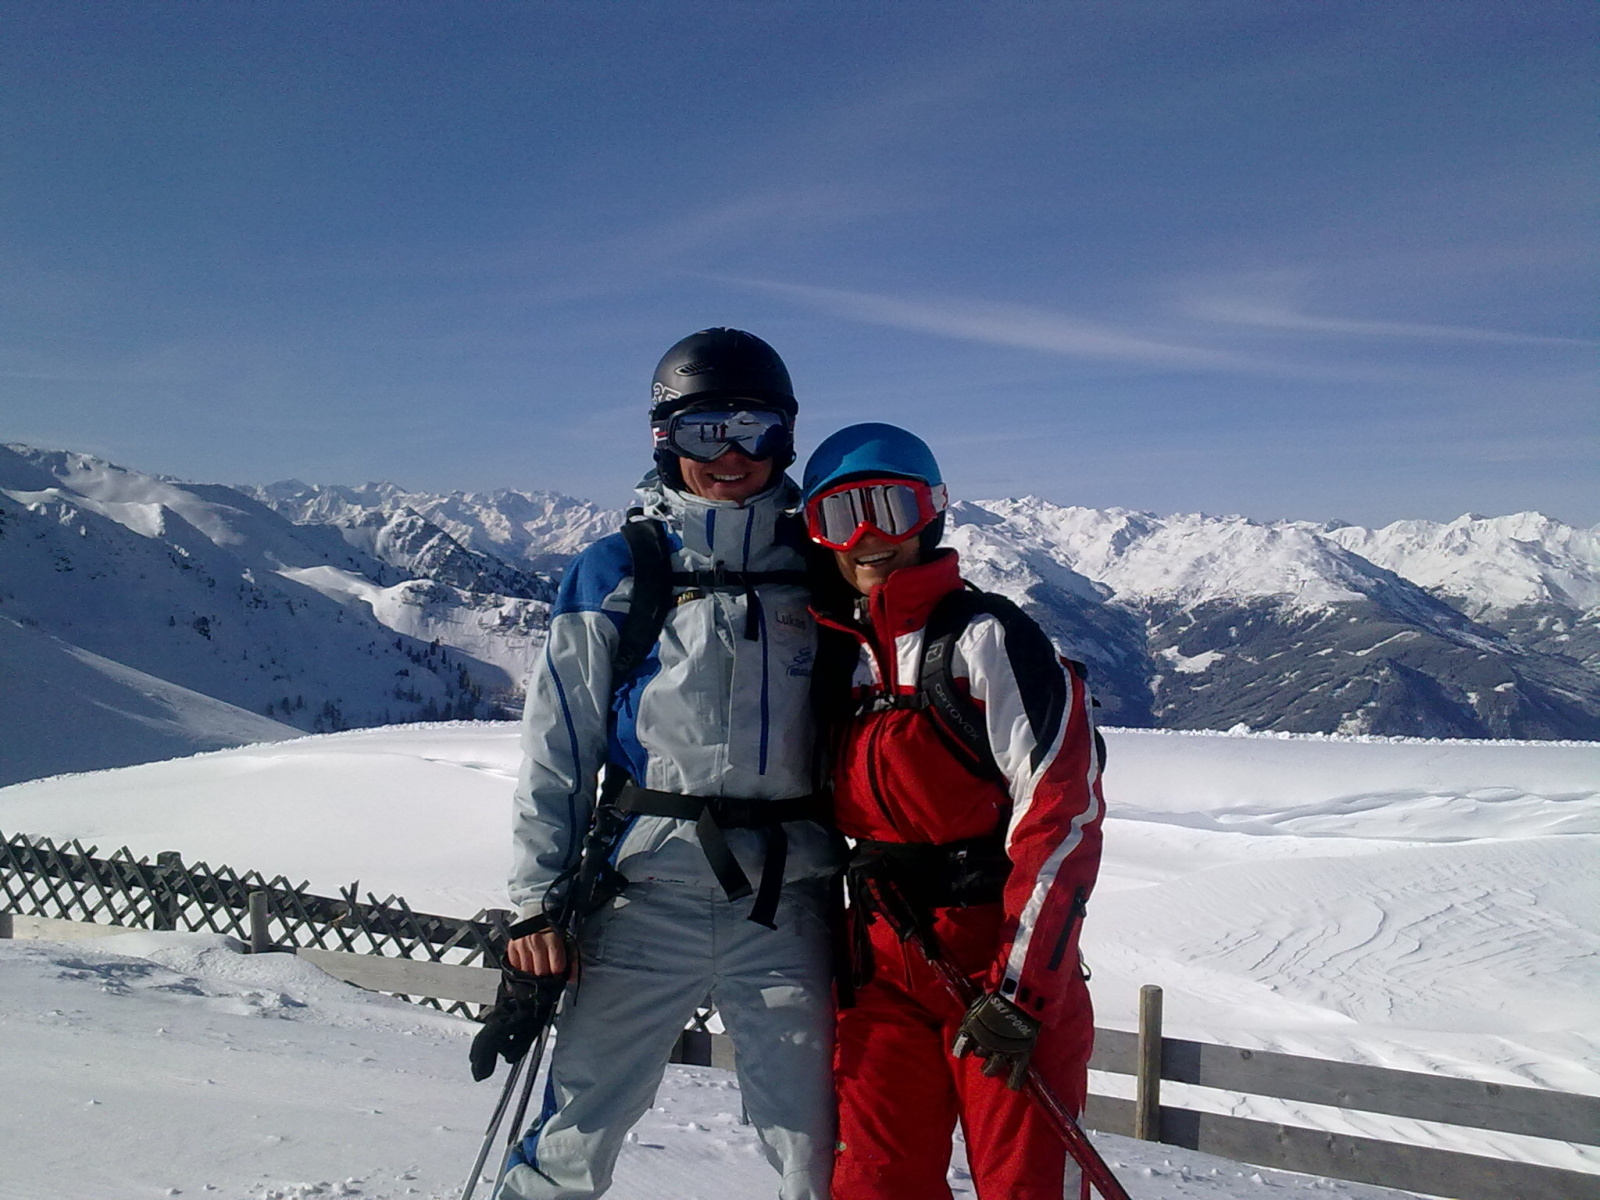 český instruktor lyžování v zahraničí - čeští instruktoři lyžování